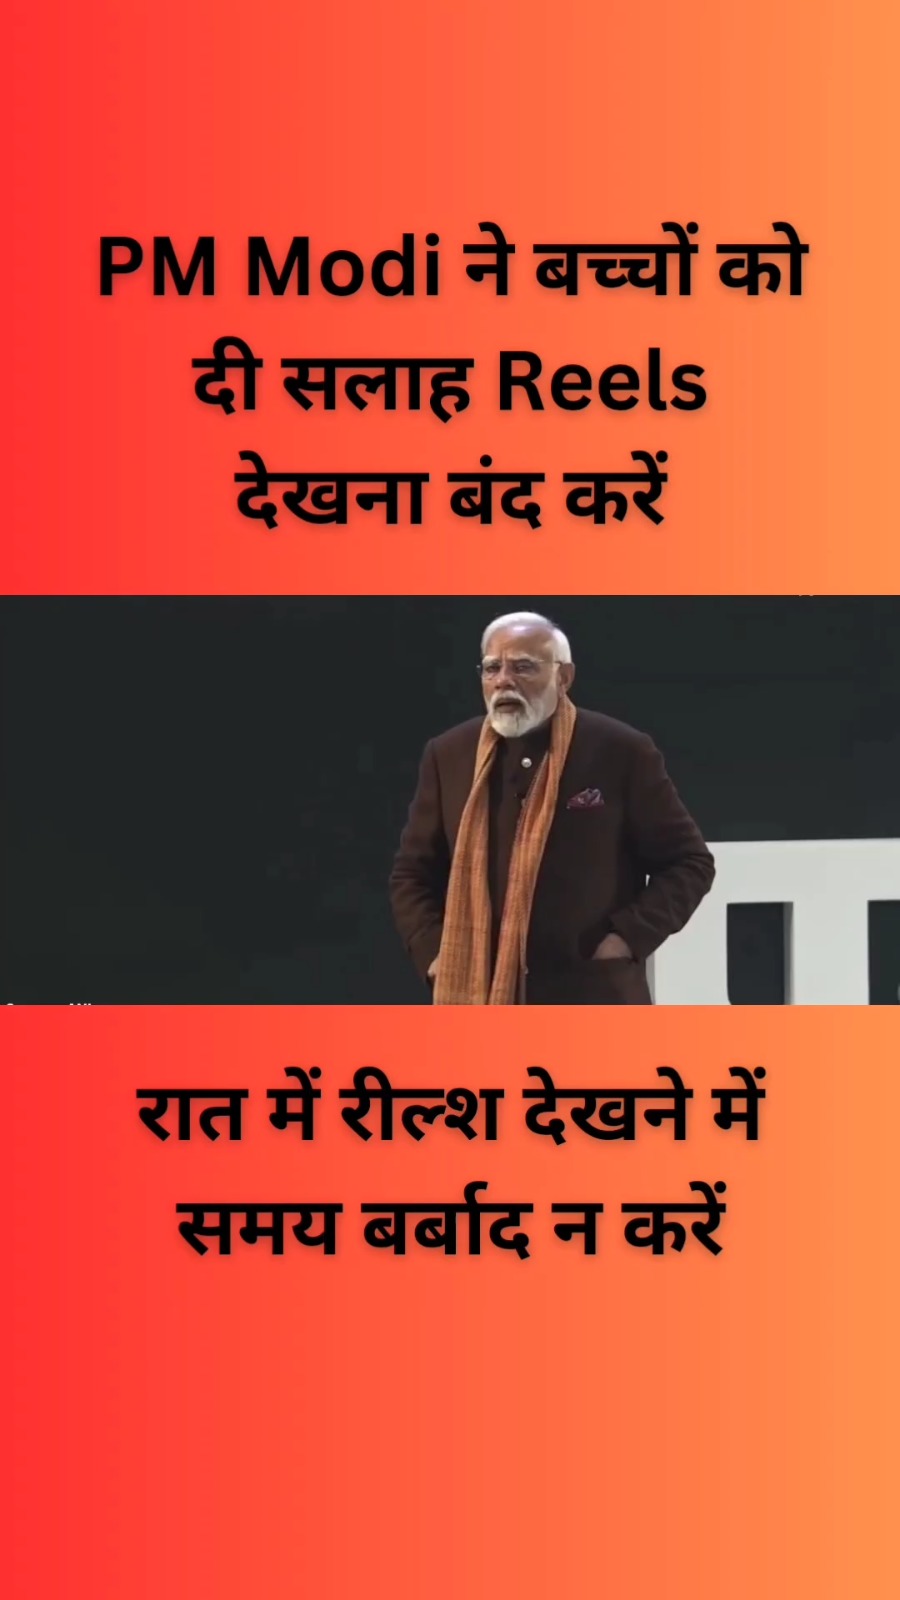 PM Modi ने कहा reels देखना बंद करें 👌🔥